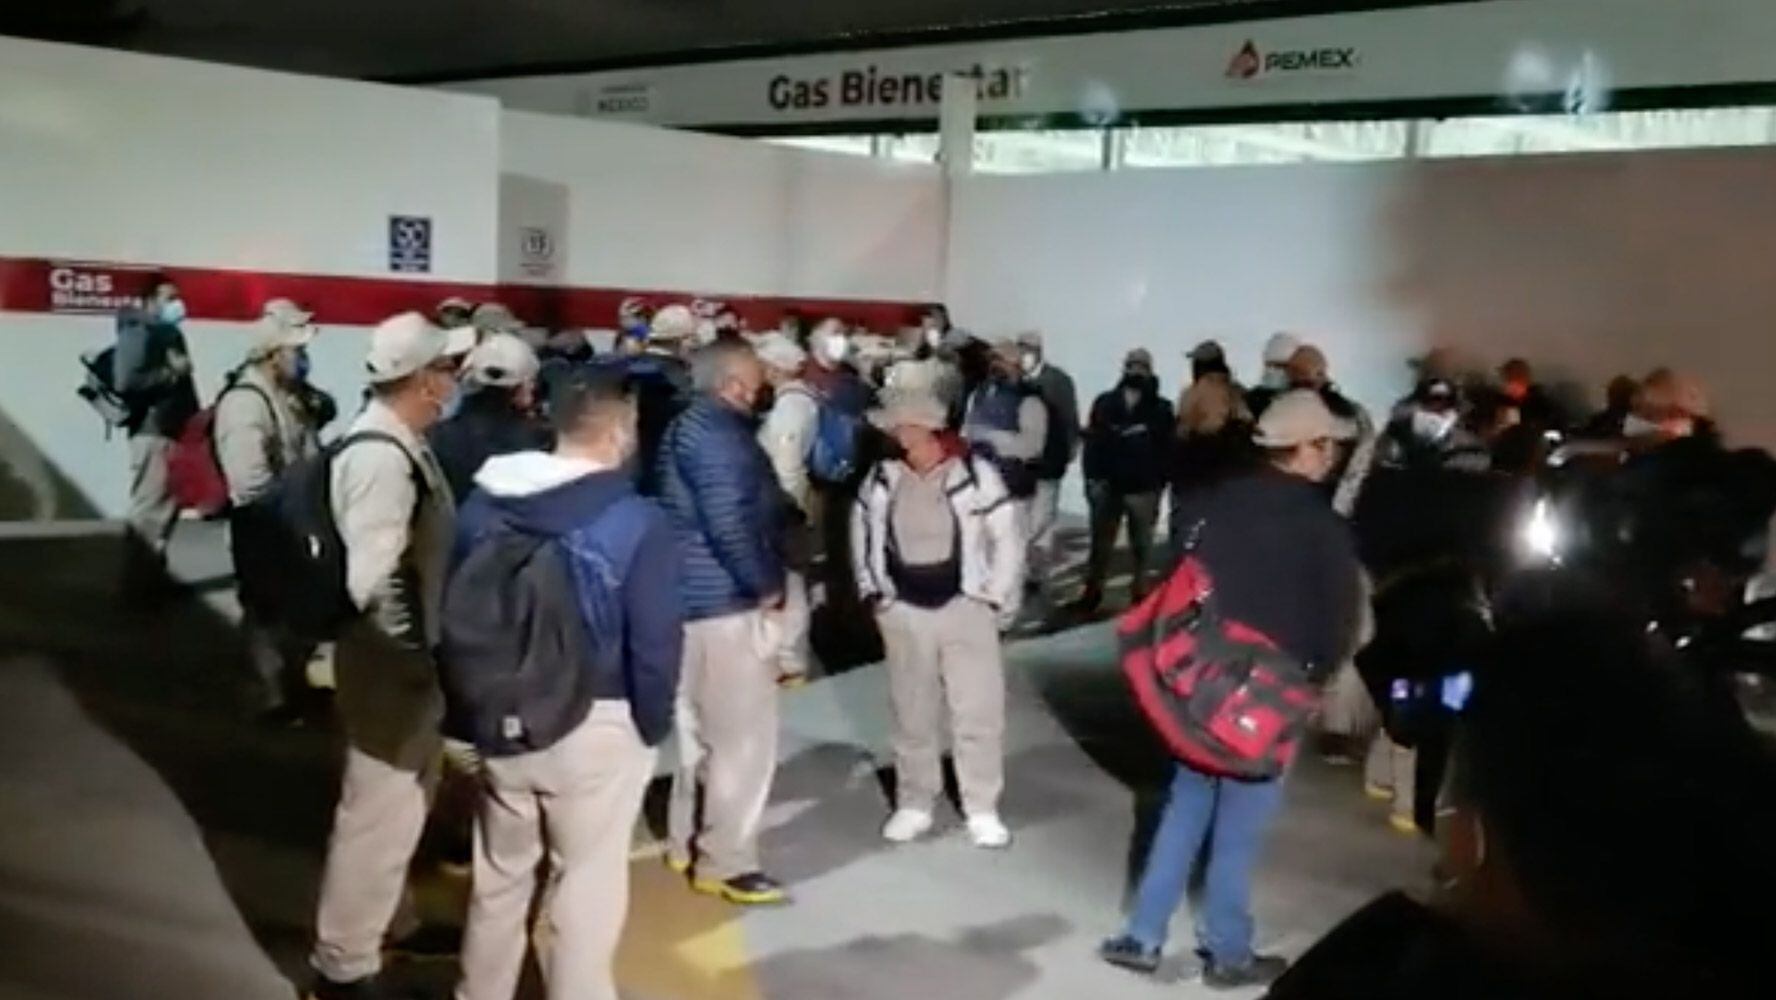 Trabajadores de Gas Bienestar protestan en CDMX por incumplimiento de contrato 